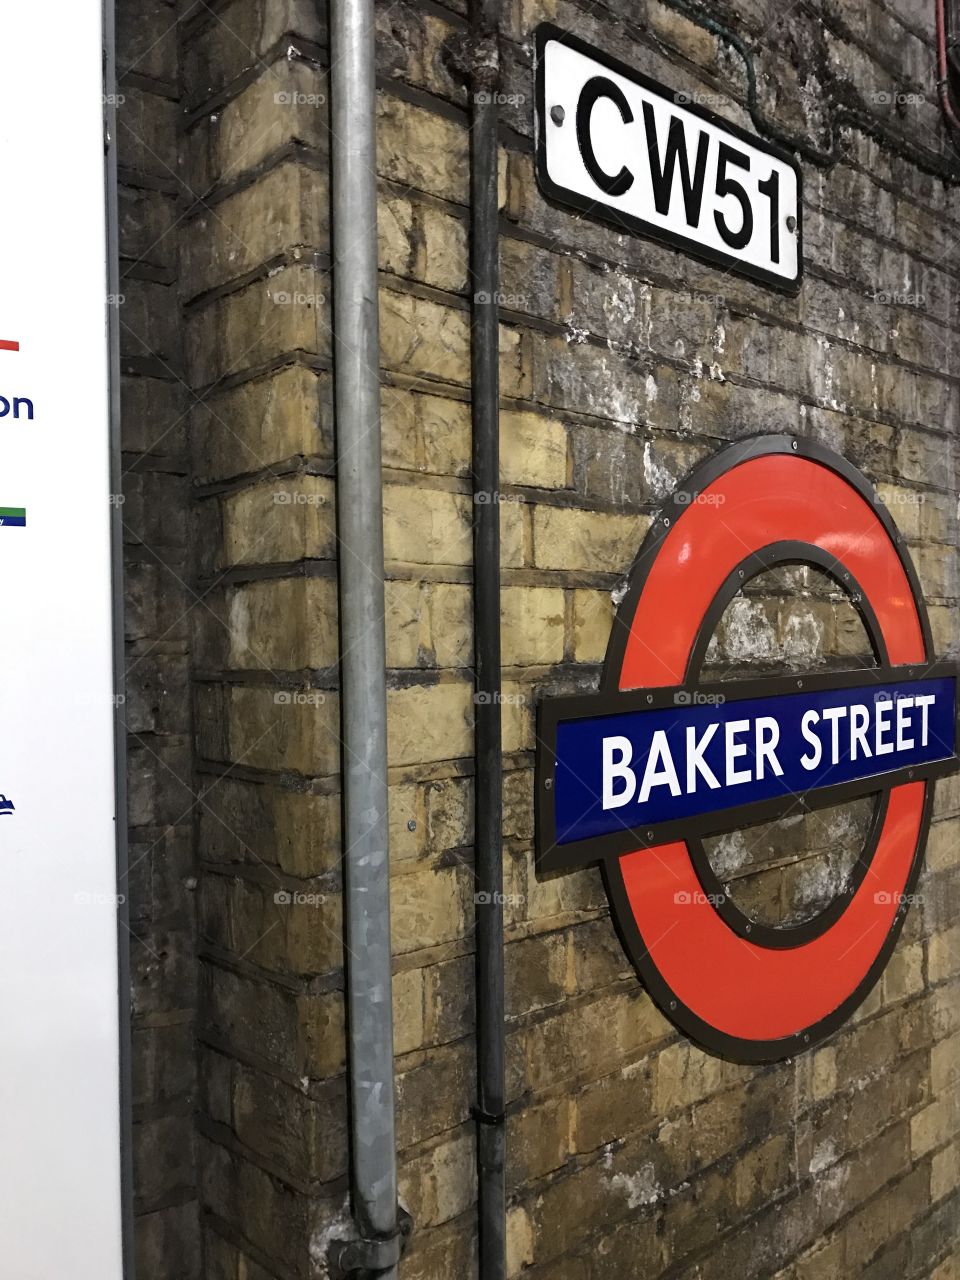 Sherlock Holmes fans alert! We are nearly 221-B Baker Street!